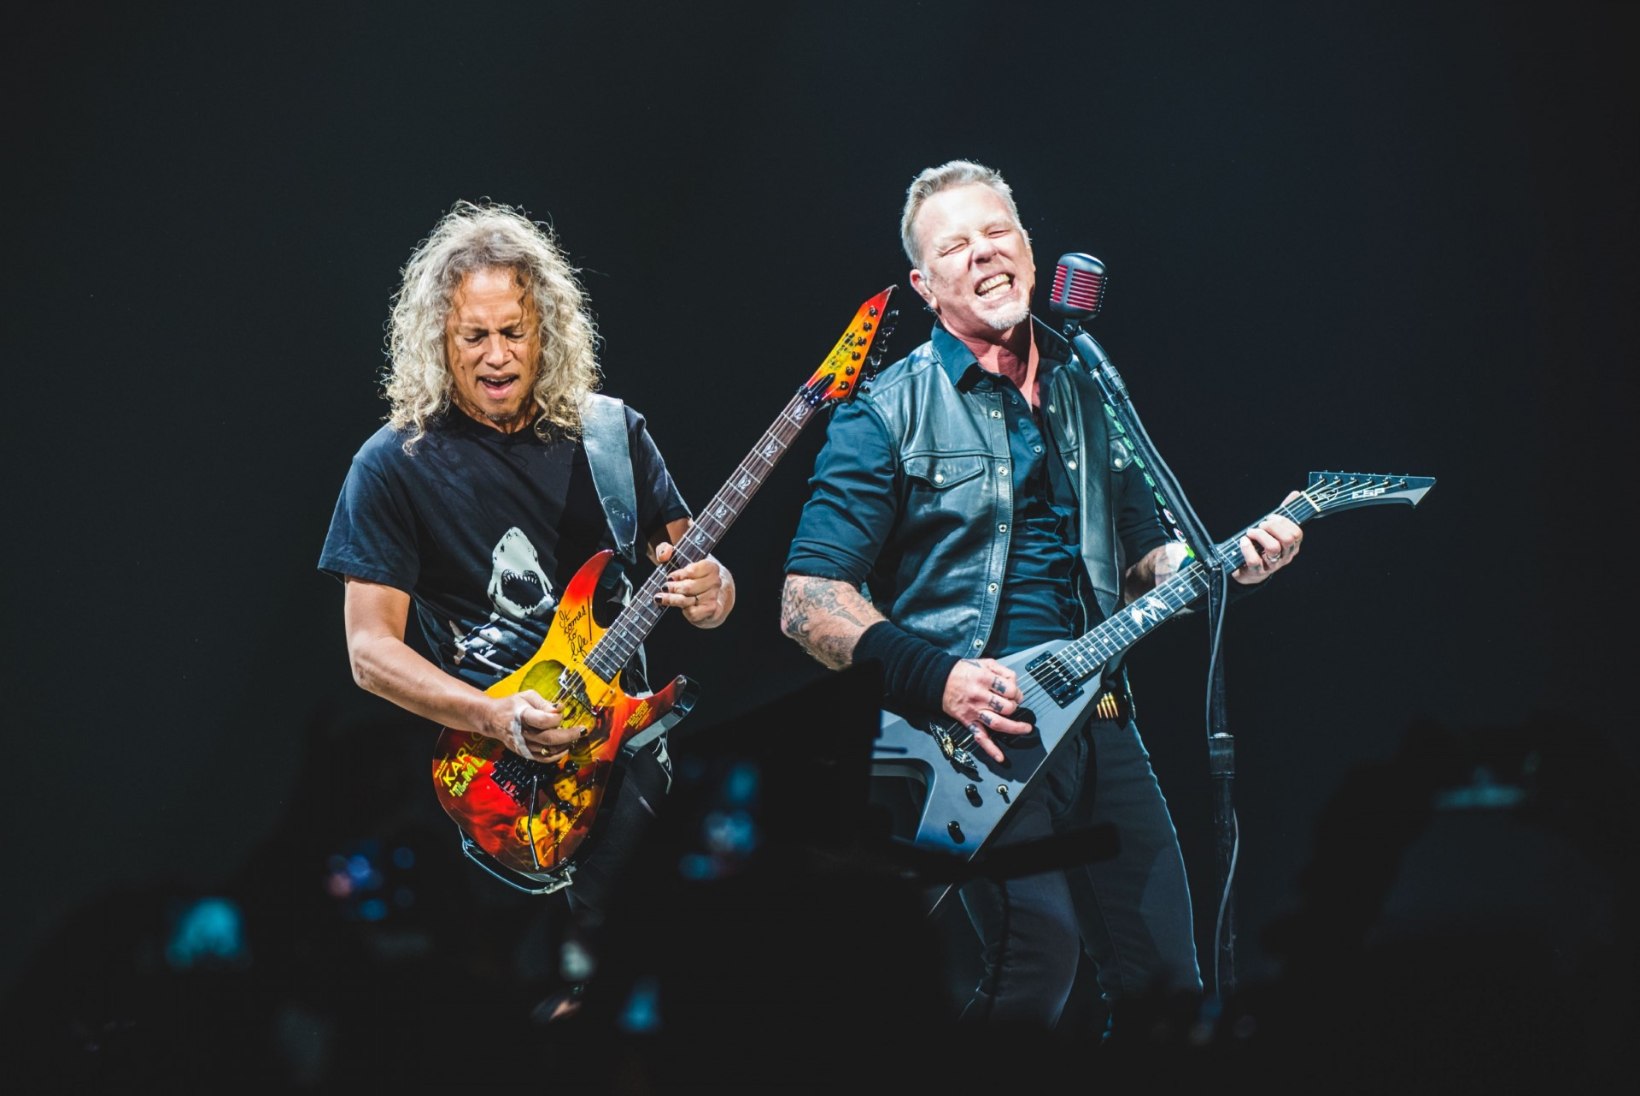 FÄNNINÄNN: Metallica andis välja oma viski ja käekella